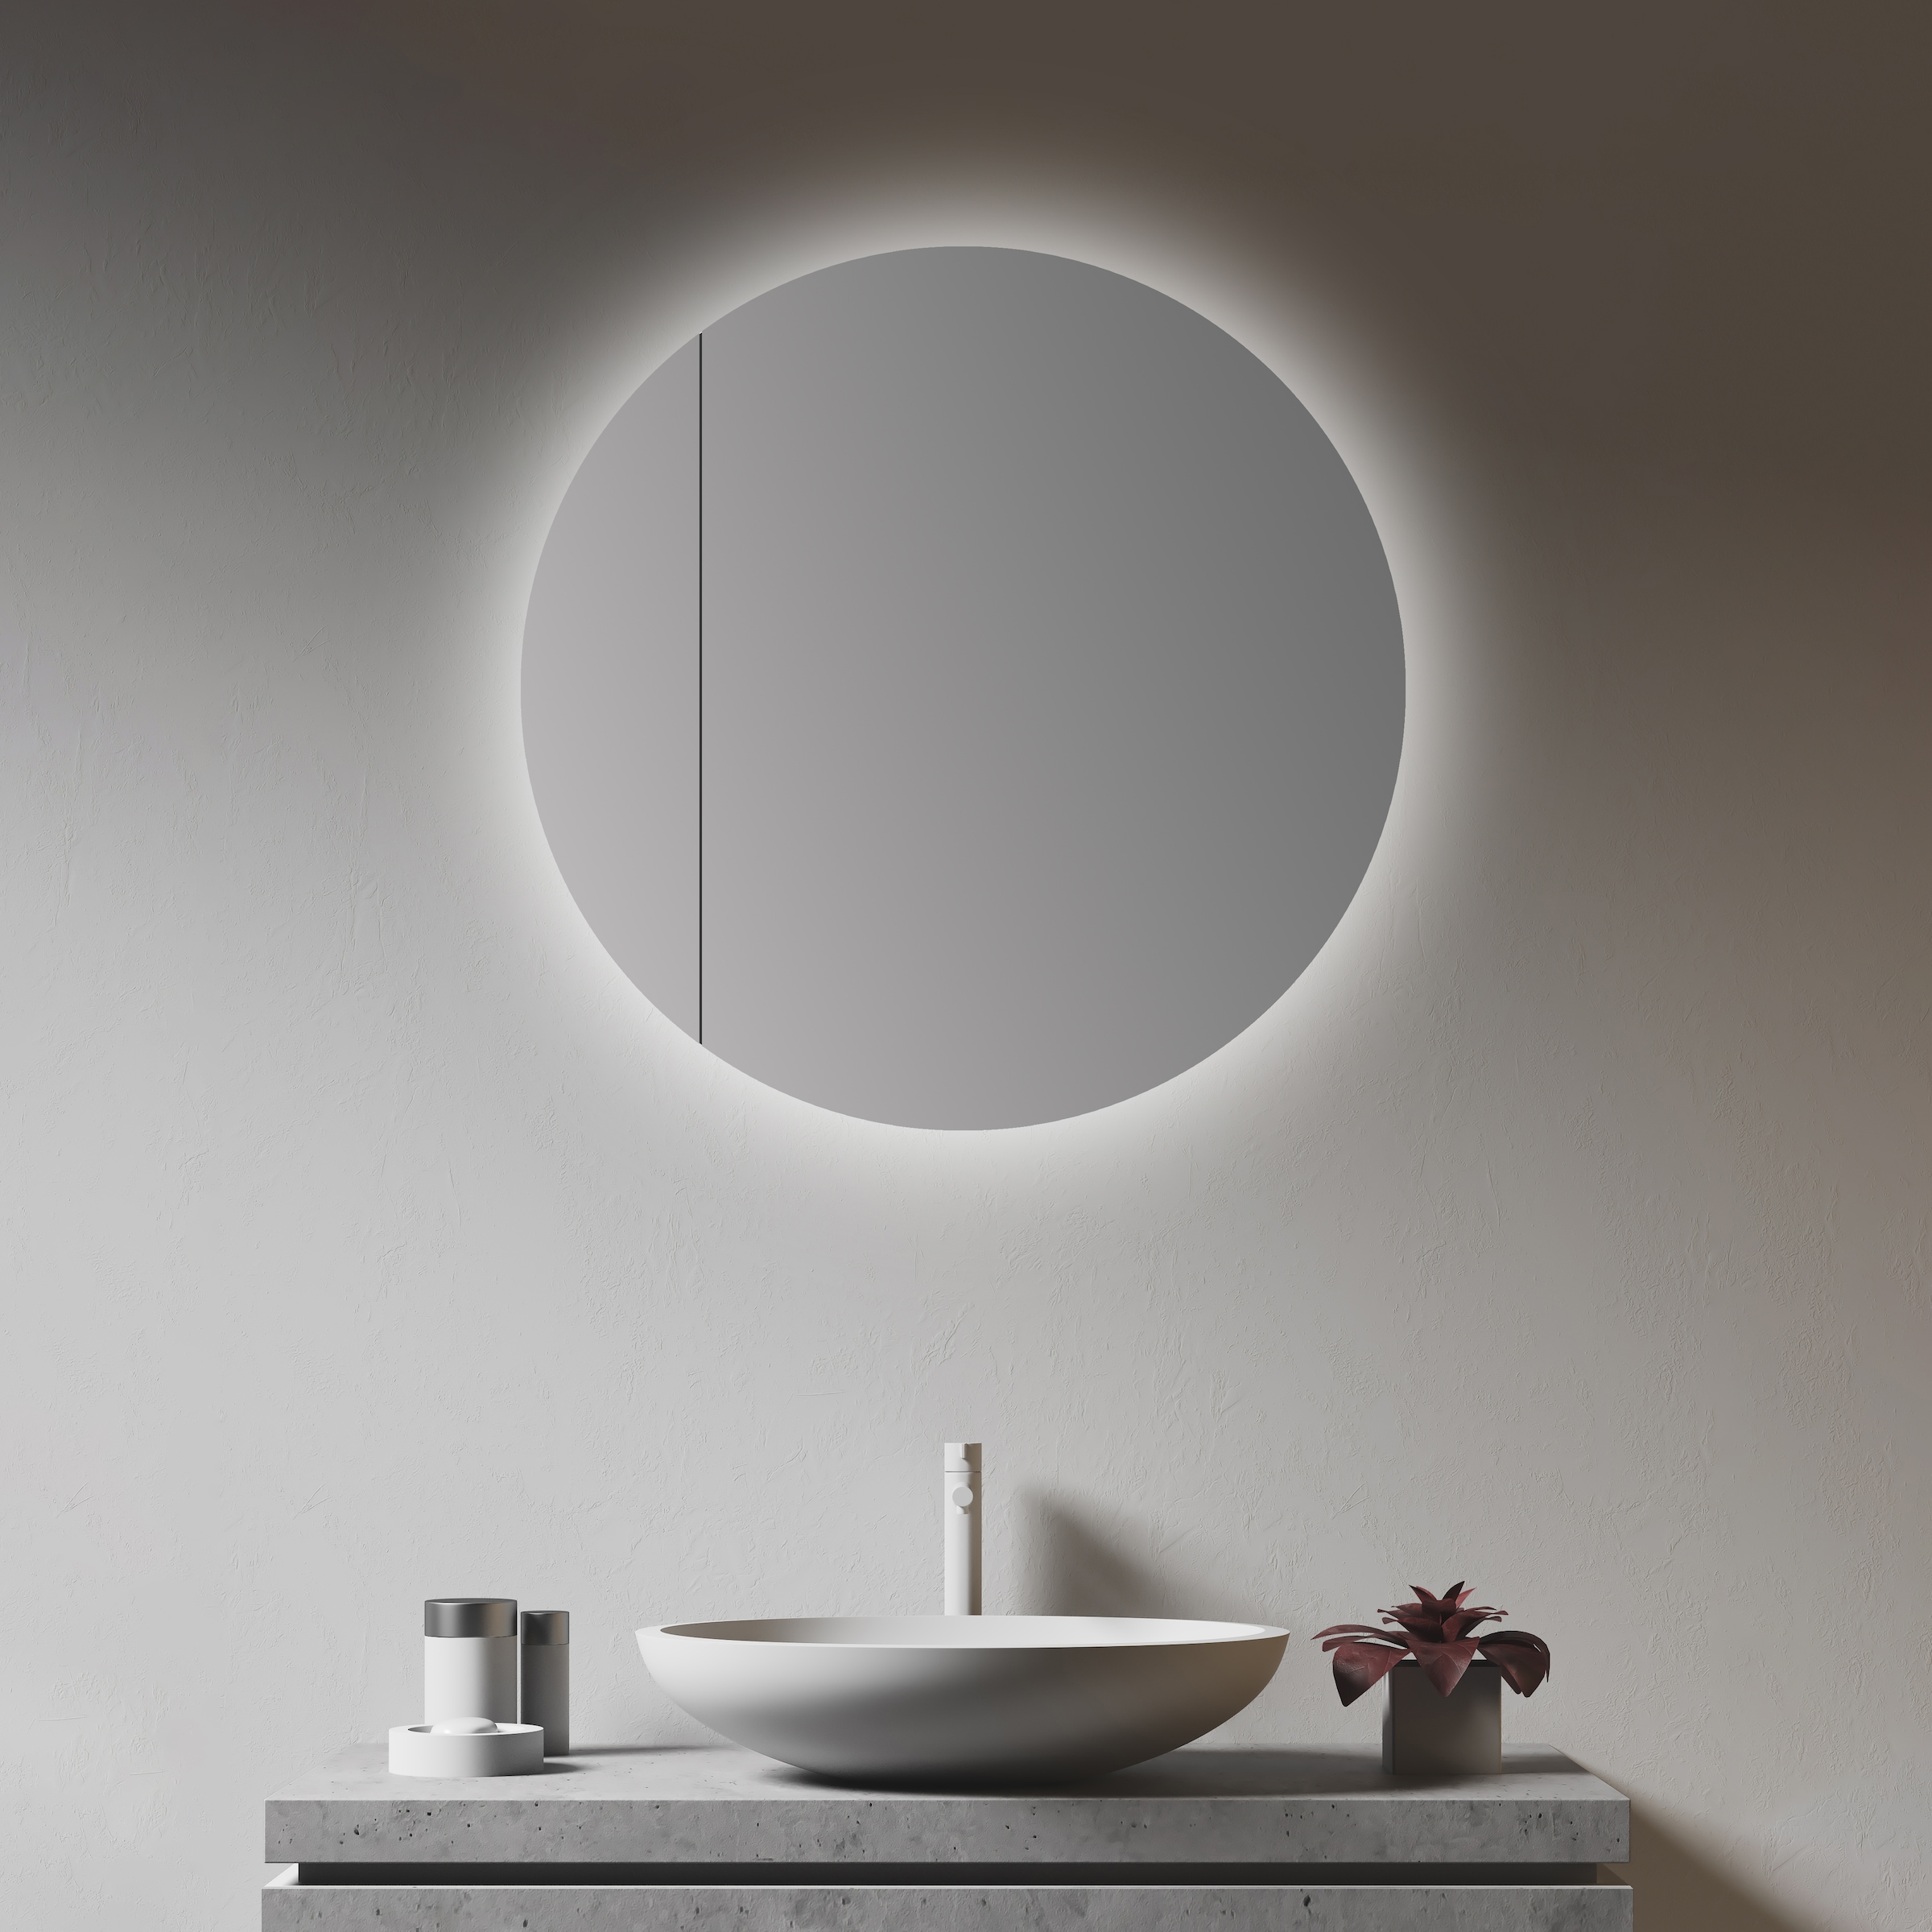 Talos Spiegelschrank "Picasso Style, weiß, Ø 60cm", Rahmen aus hochwertiger Aluminiumlegierung